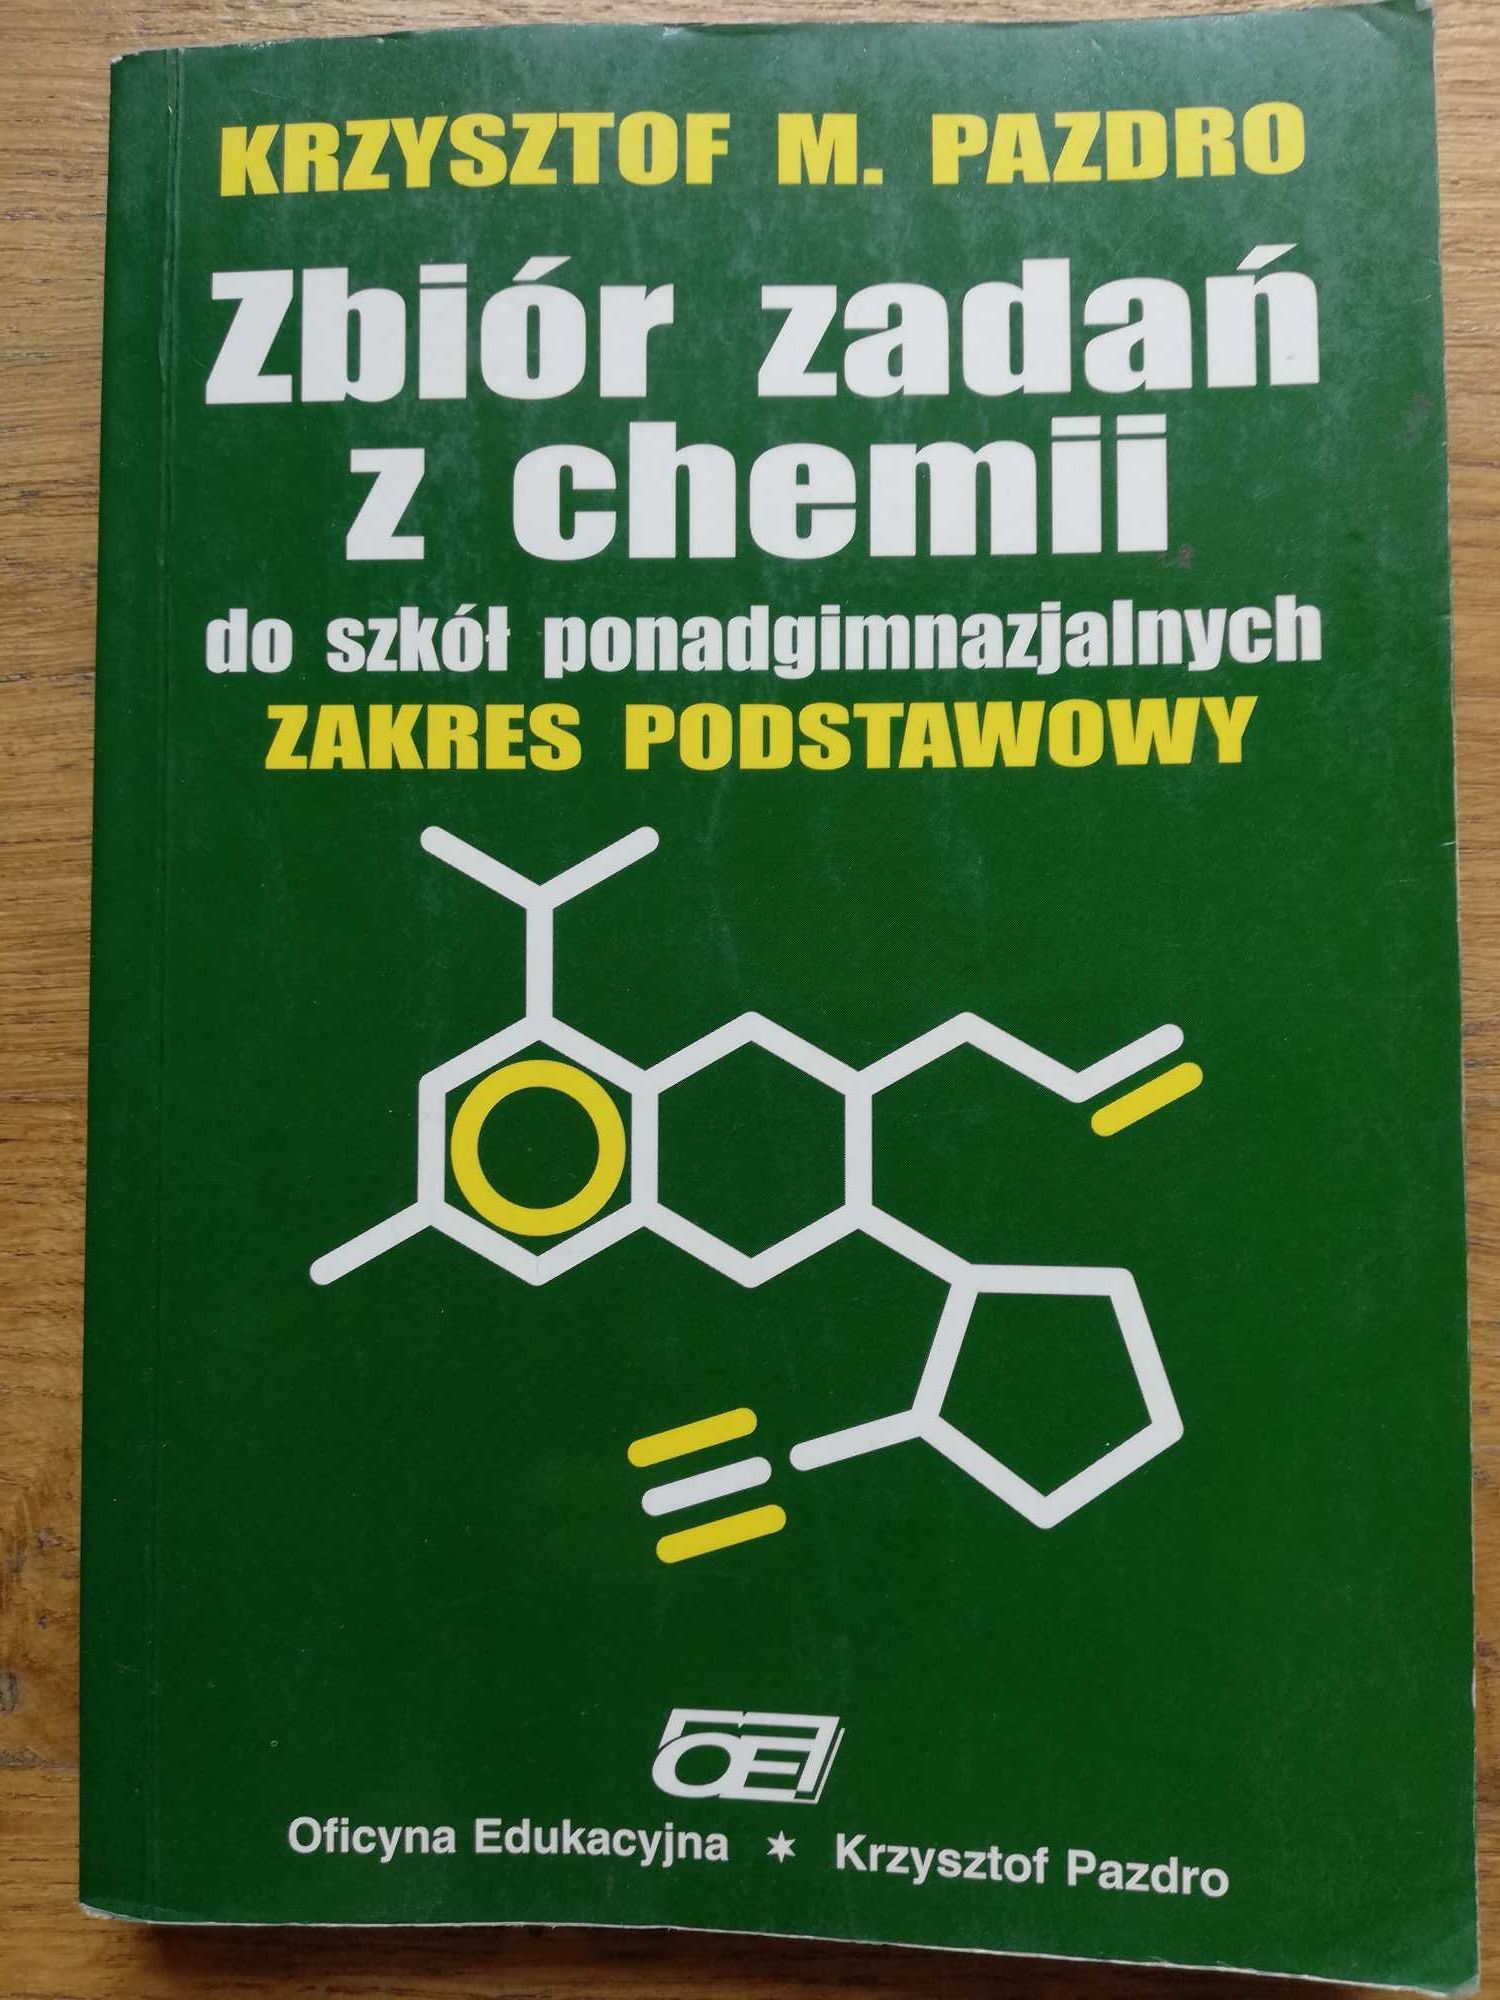 Zbiór zadań z chemii zakres podstawowy- K. Pazdro